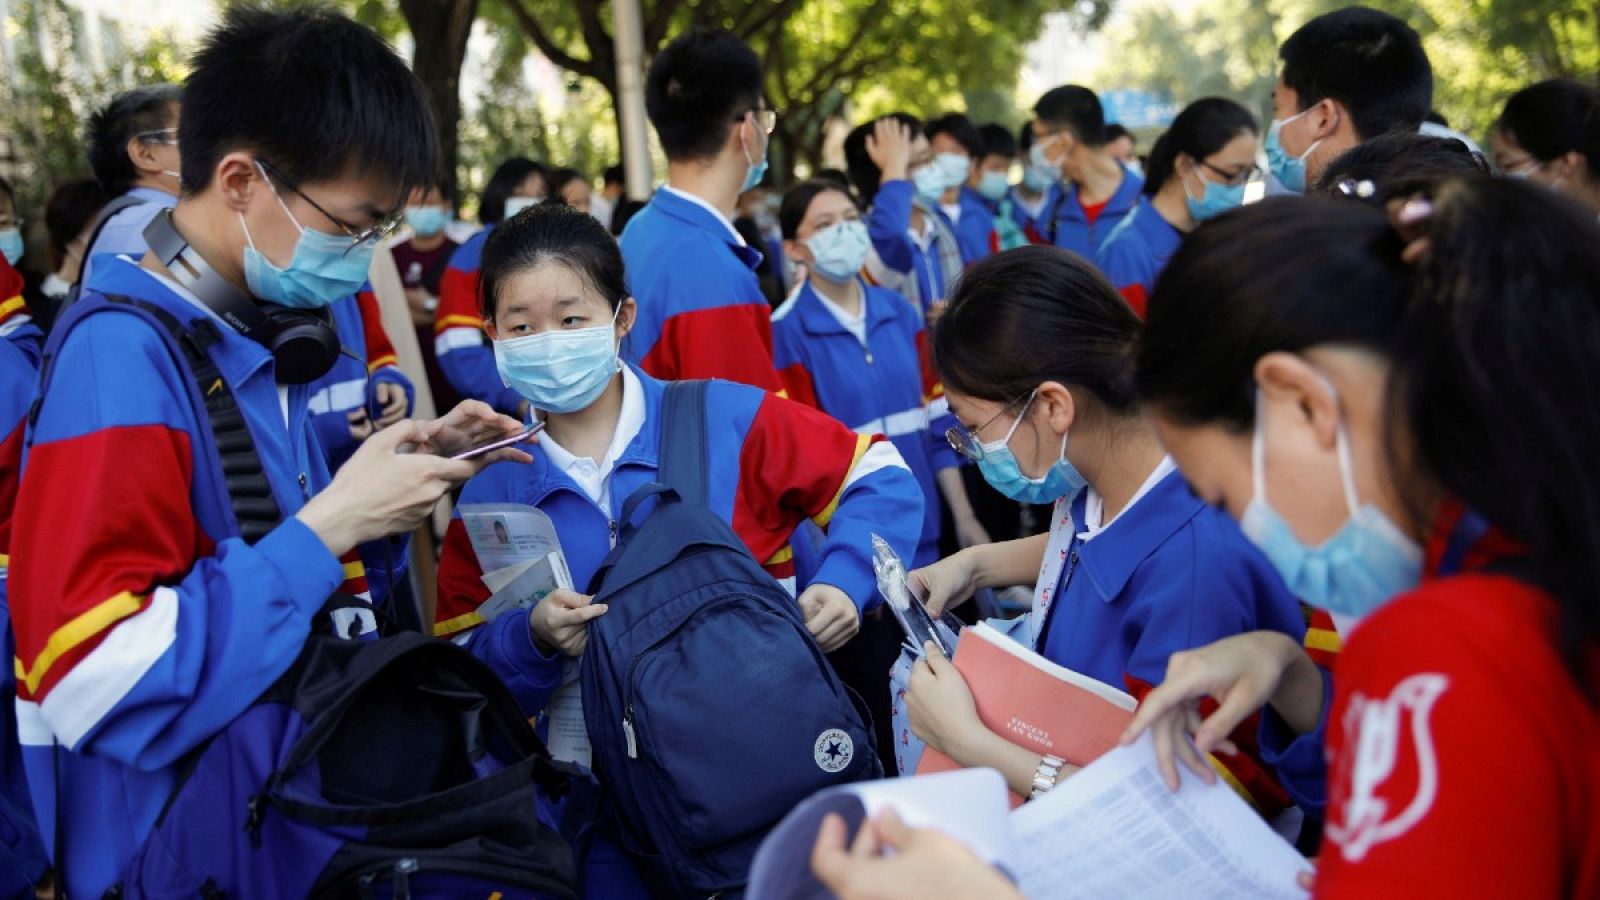 Un grupo de estudiantes con mascarillas se preparan antes de entrar al examen anual nacional de ingreso a la universidad, o "gaokao", que ha sido pospuesto un mes debido al brote de coronavirus, en Pekín, China.